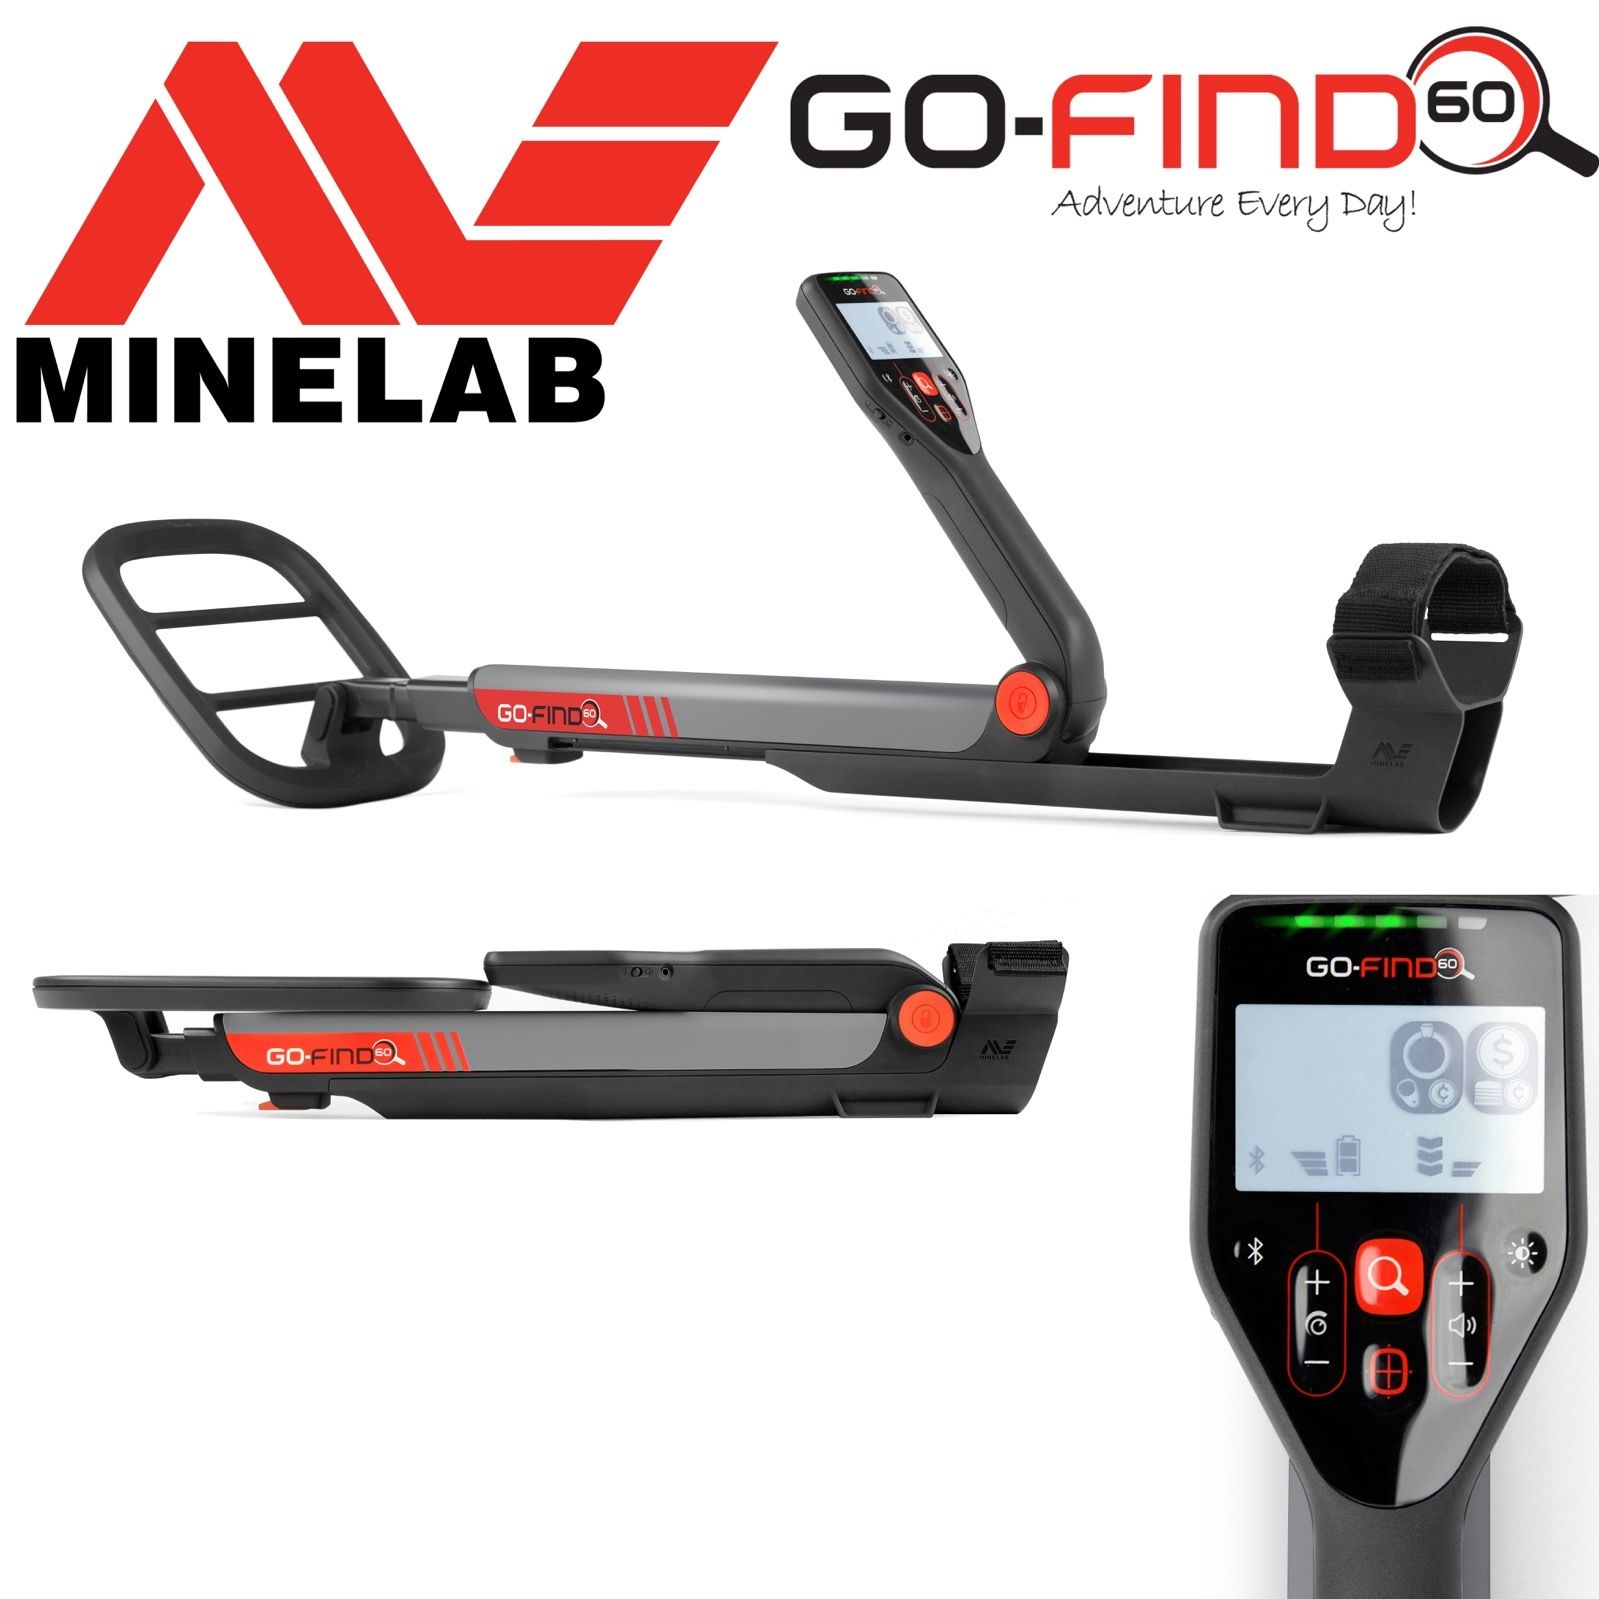 minelab-go-find-60